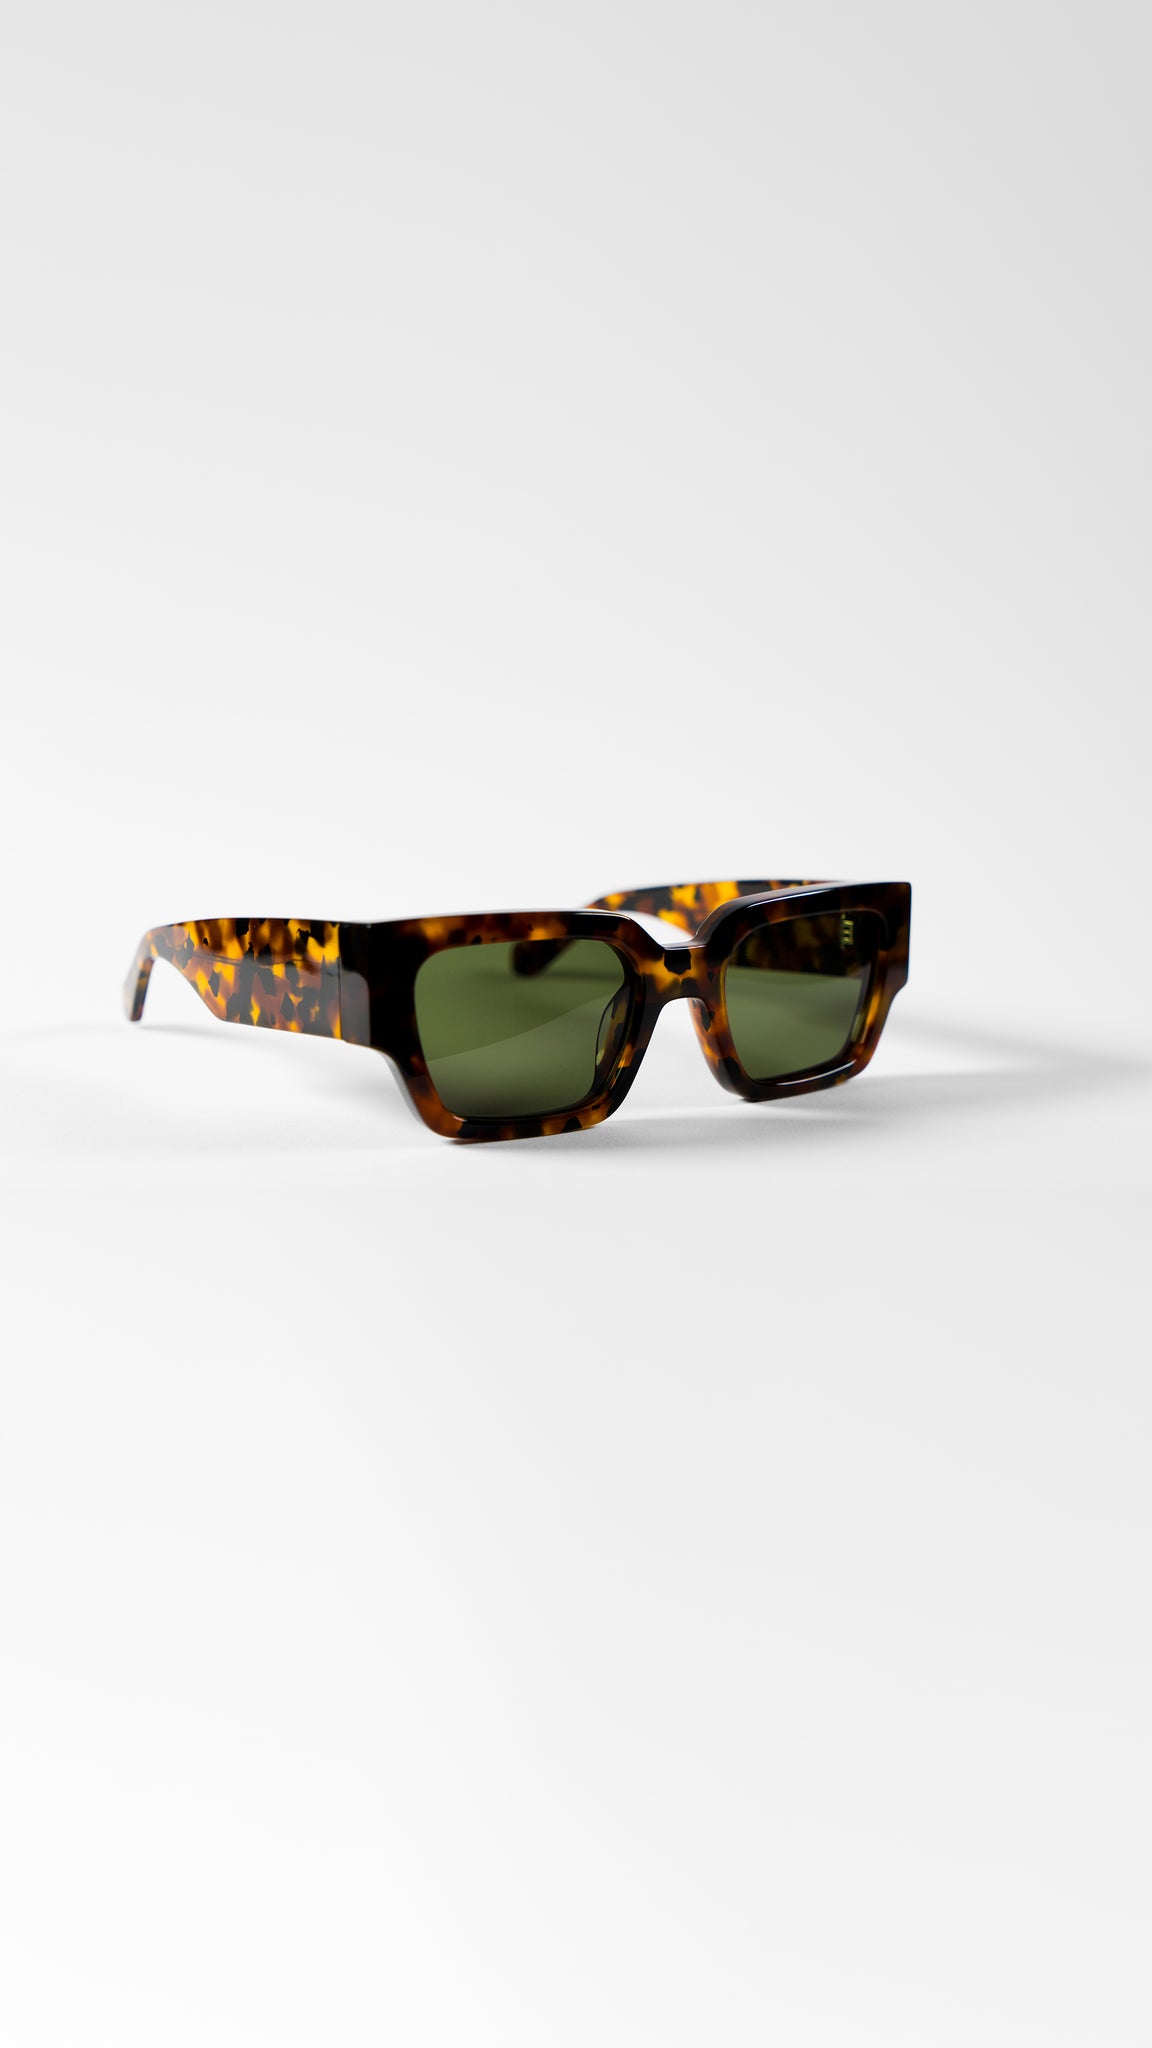 MBD 01 Sunglasses